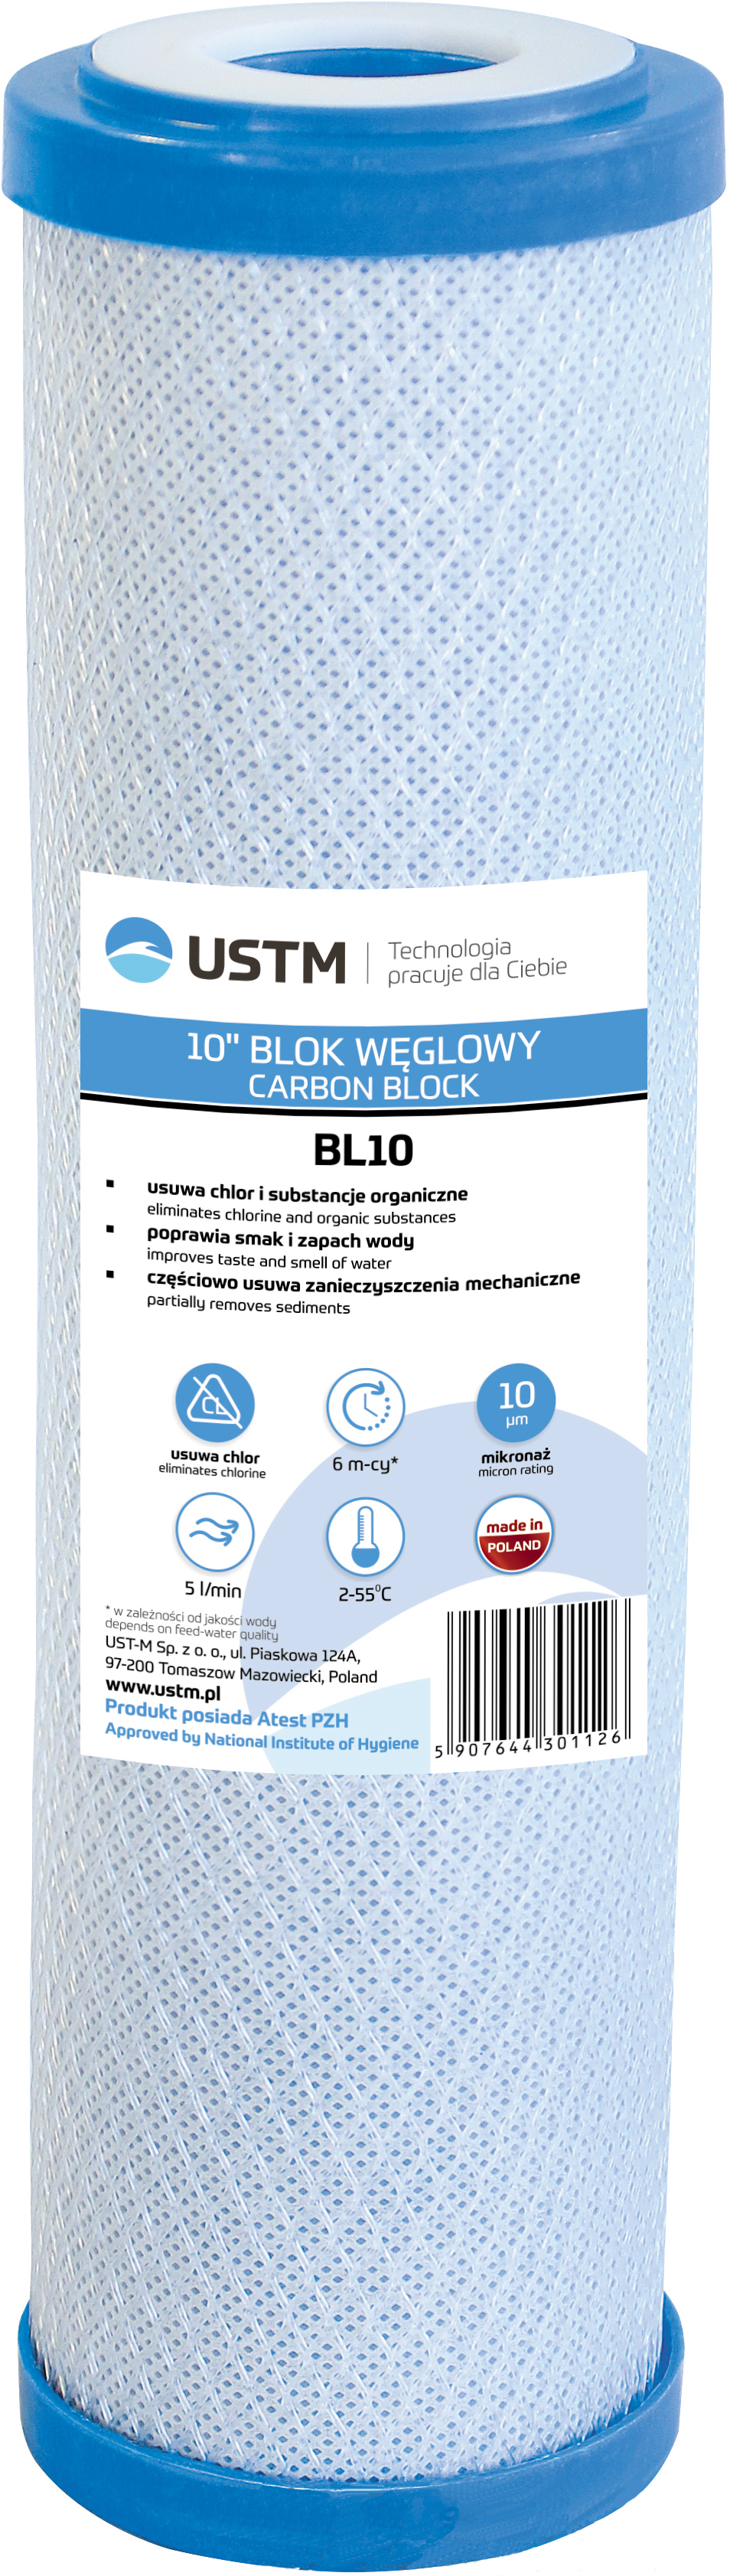 Отзывы картридж для фильтра USTM BL10